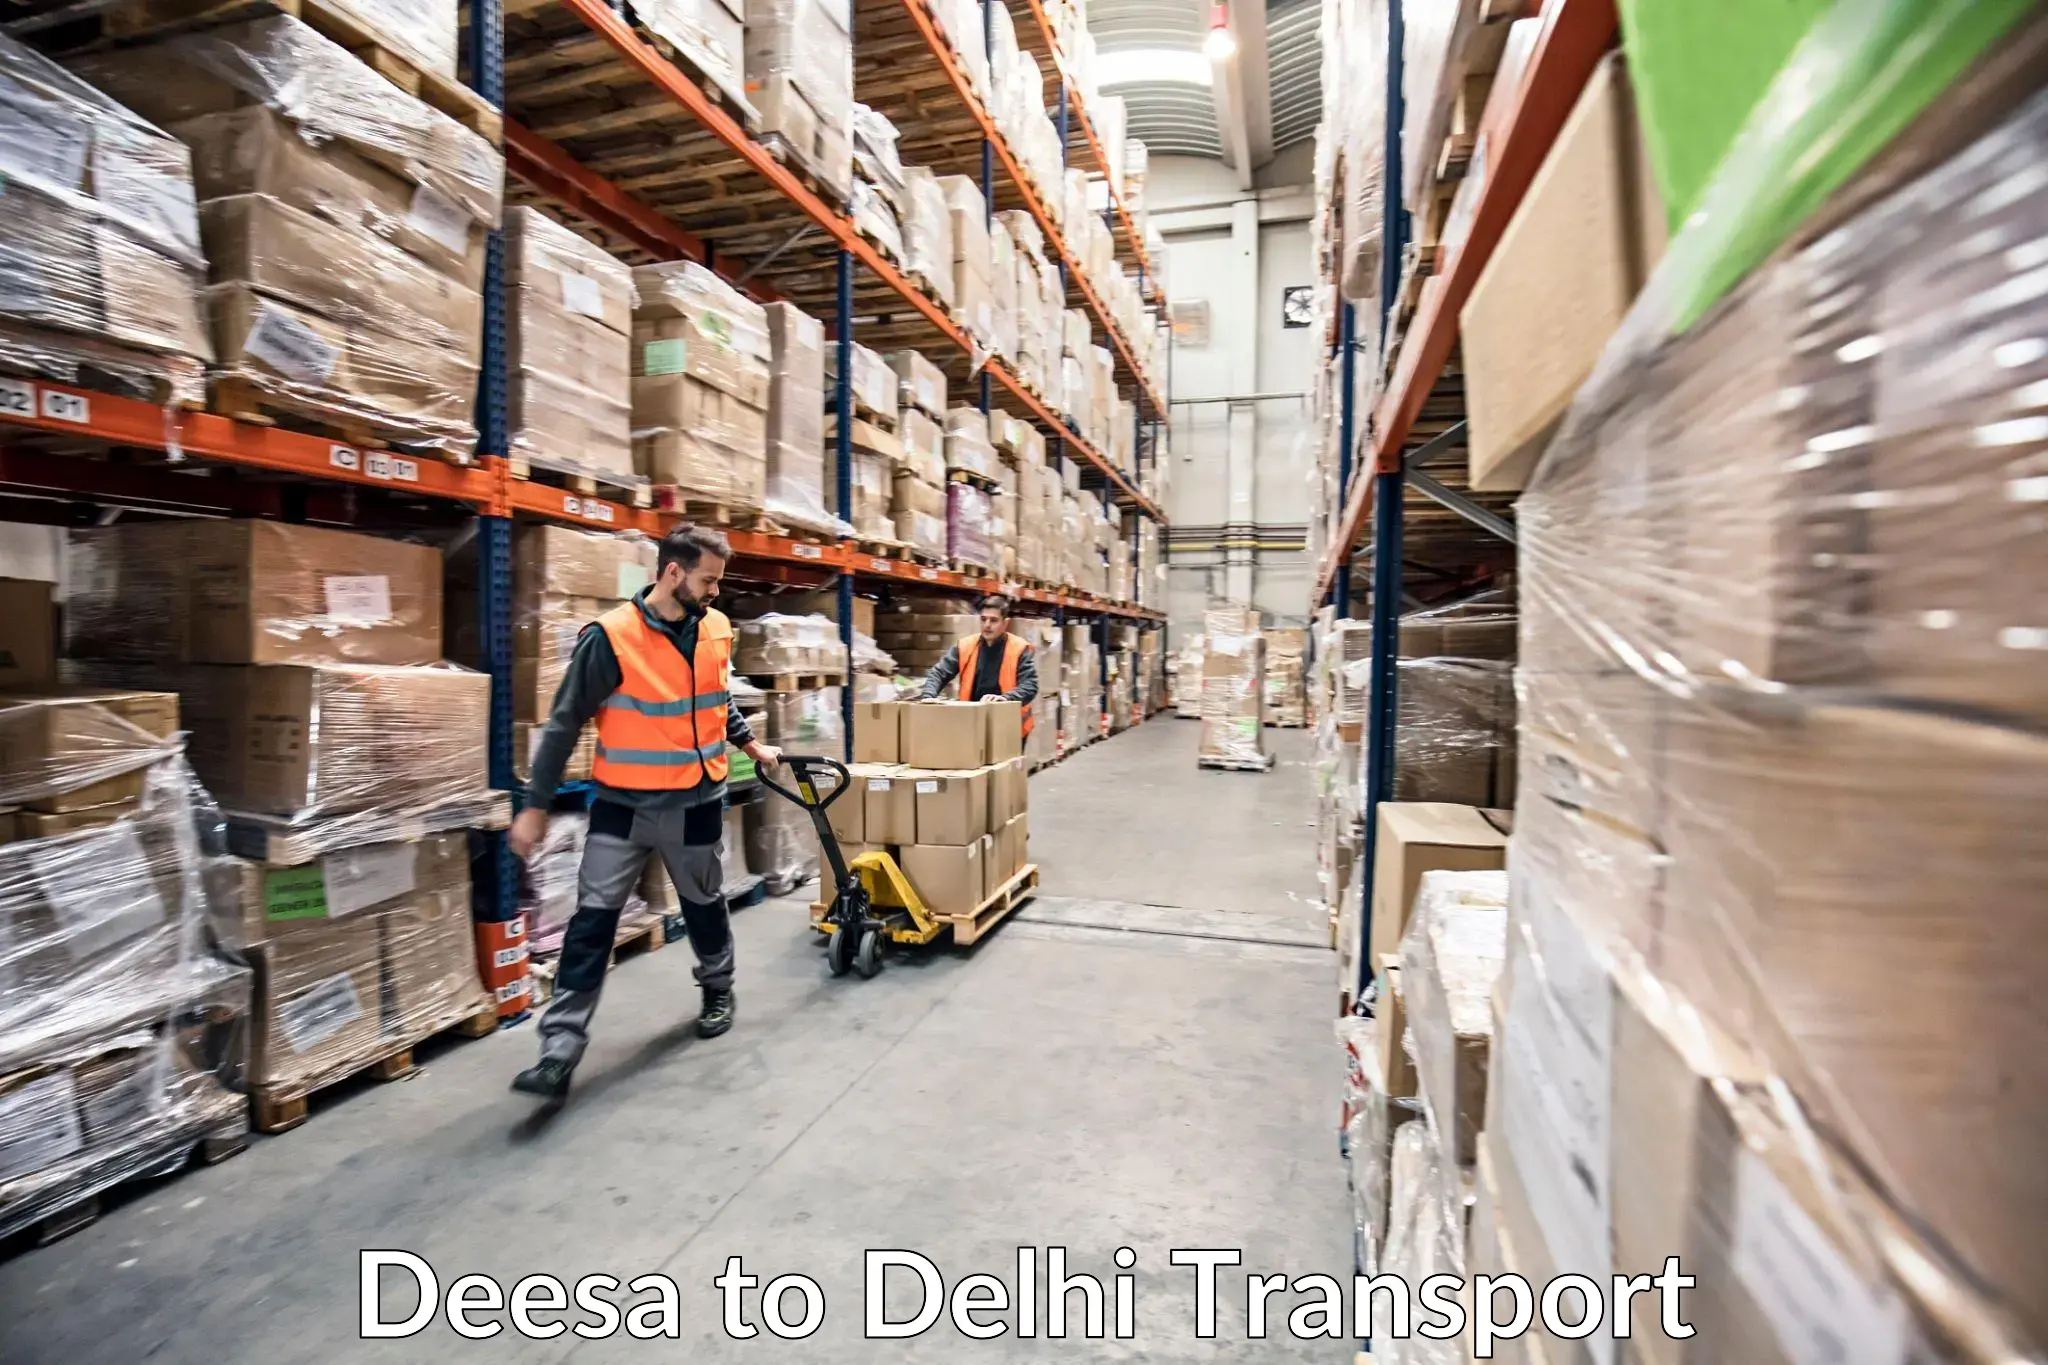 Domestic transport services Deesa to NIT Delhi